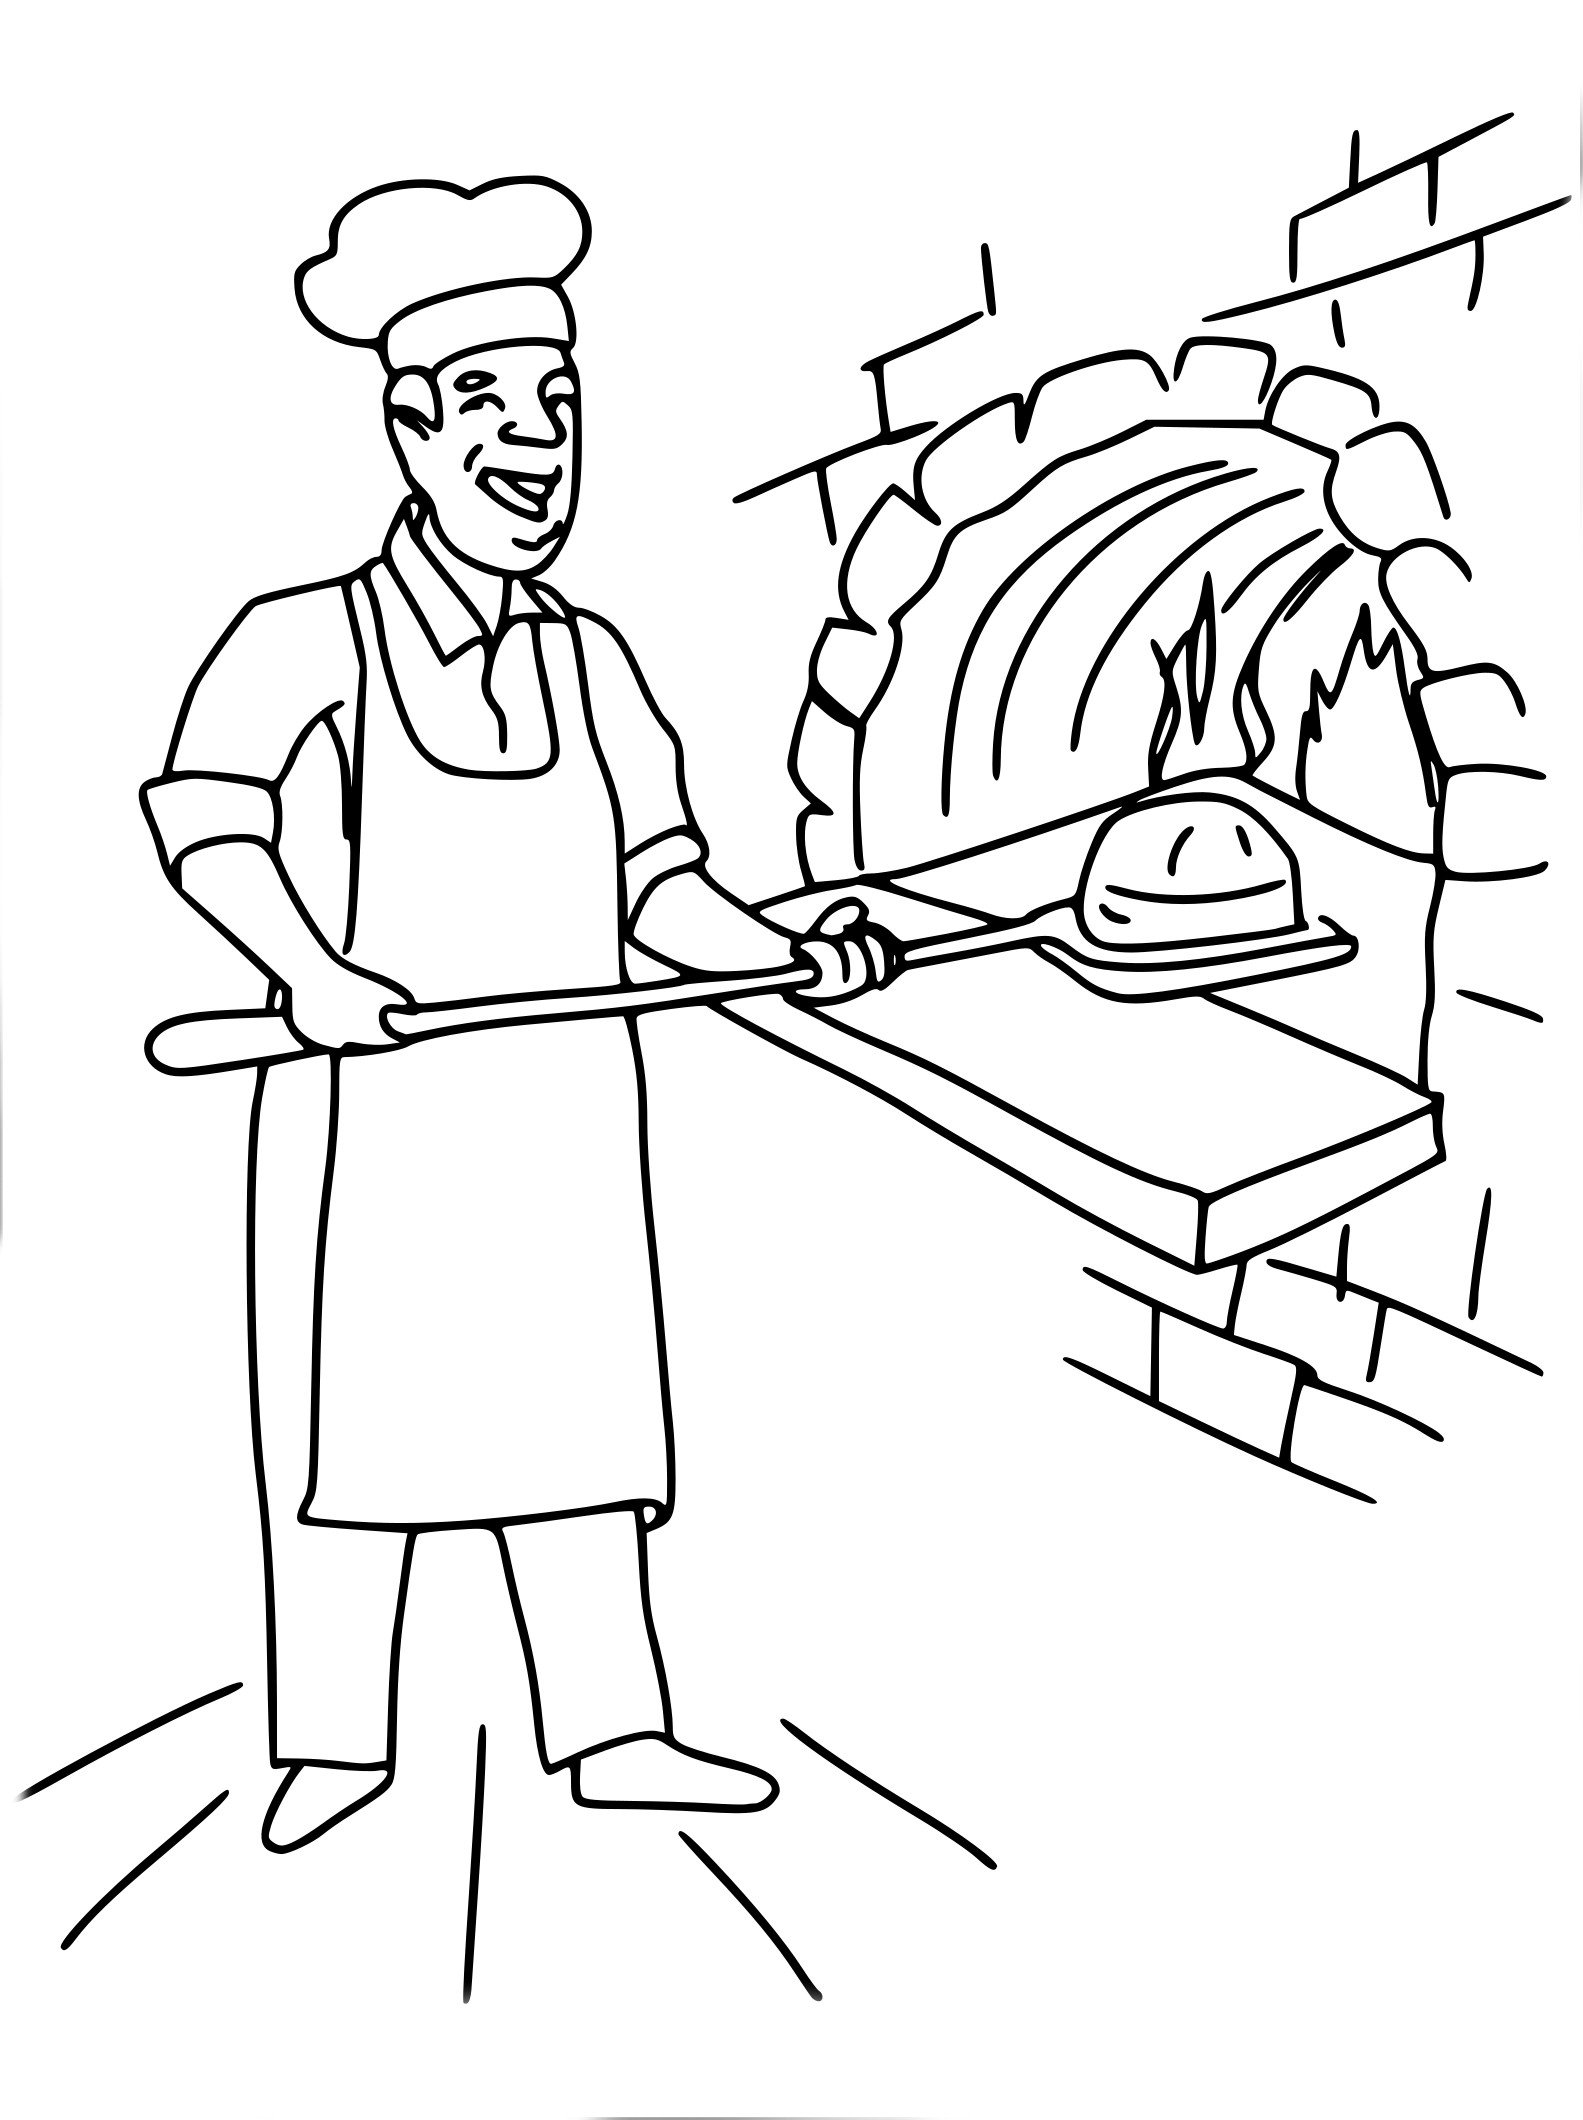 Раскраска профессии пекарь